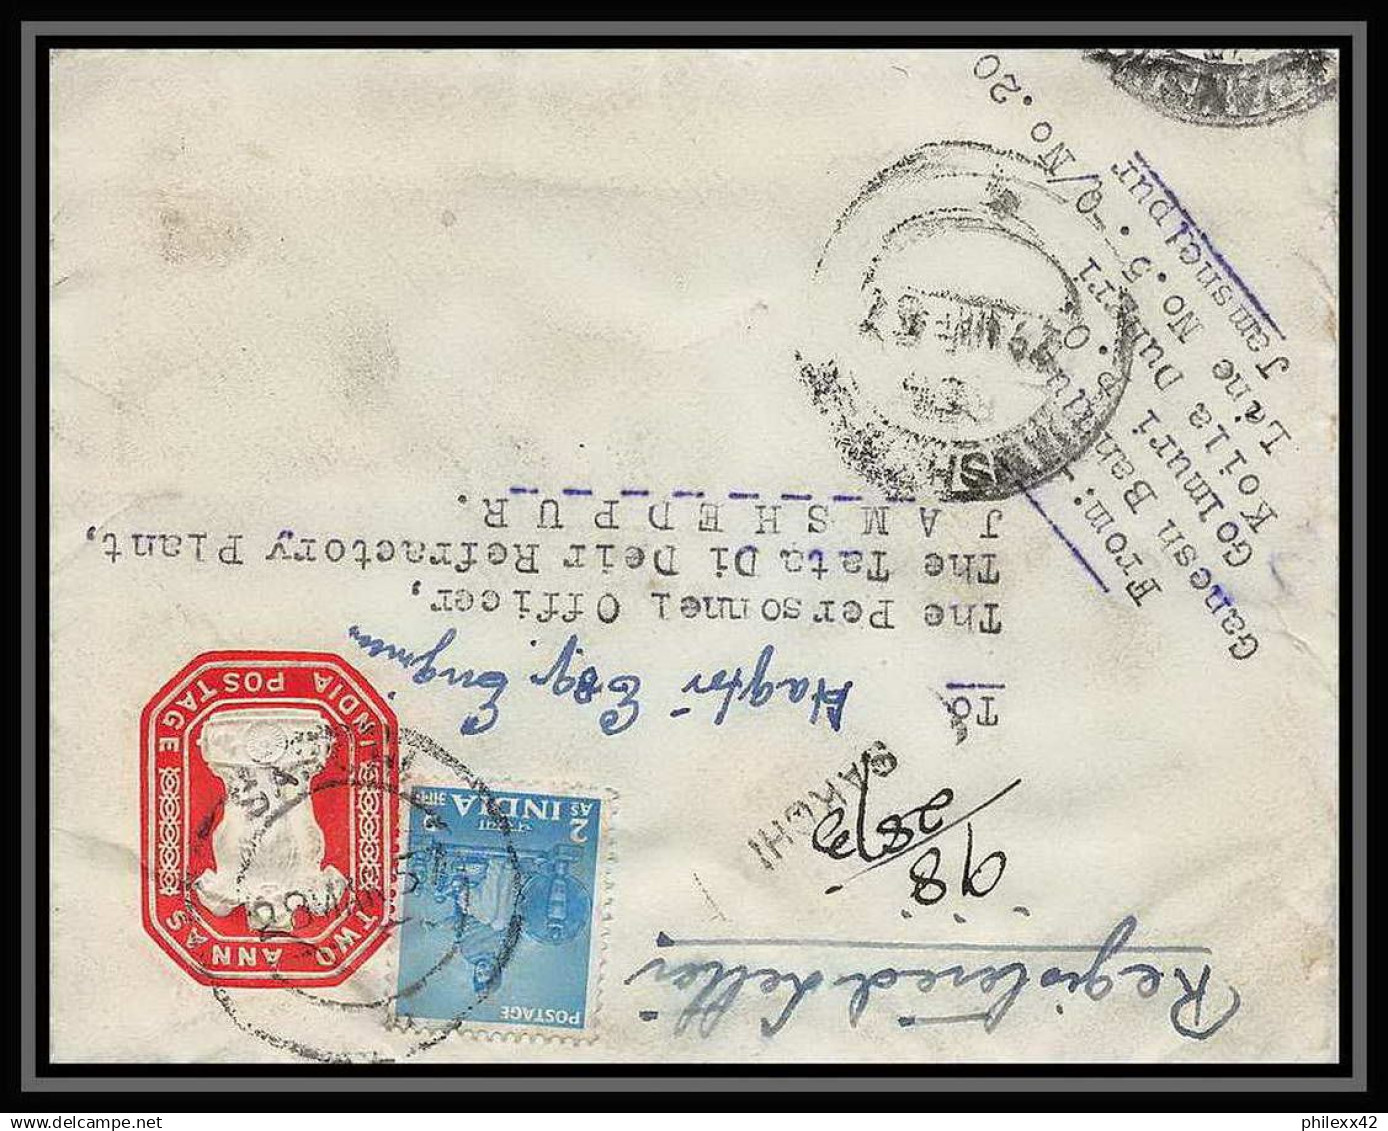 1943/ Inde (India) Entier Stationery Enveloppe (cover) N°21 Registered 1957 - Briefe